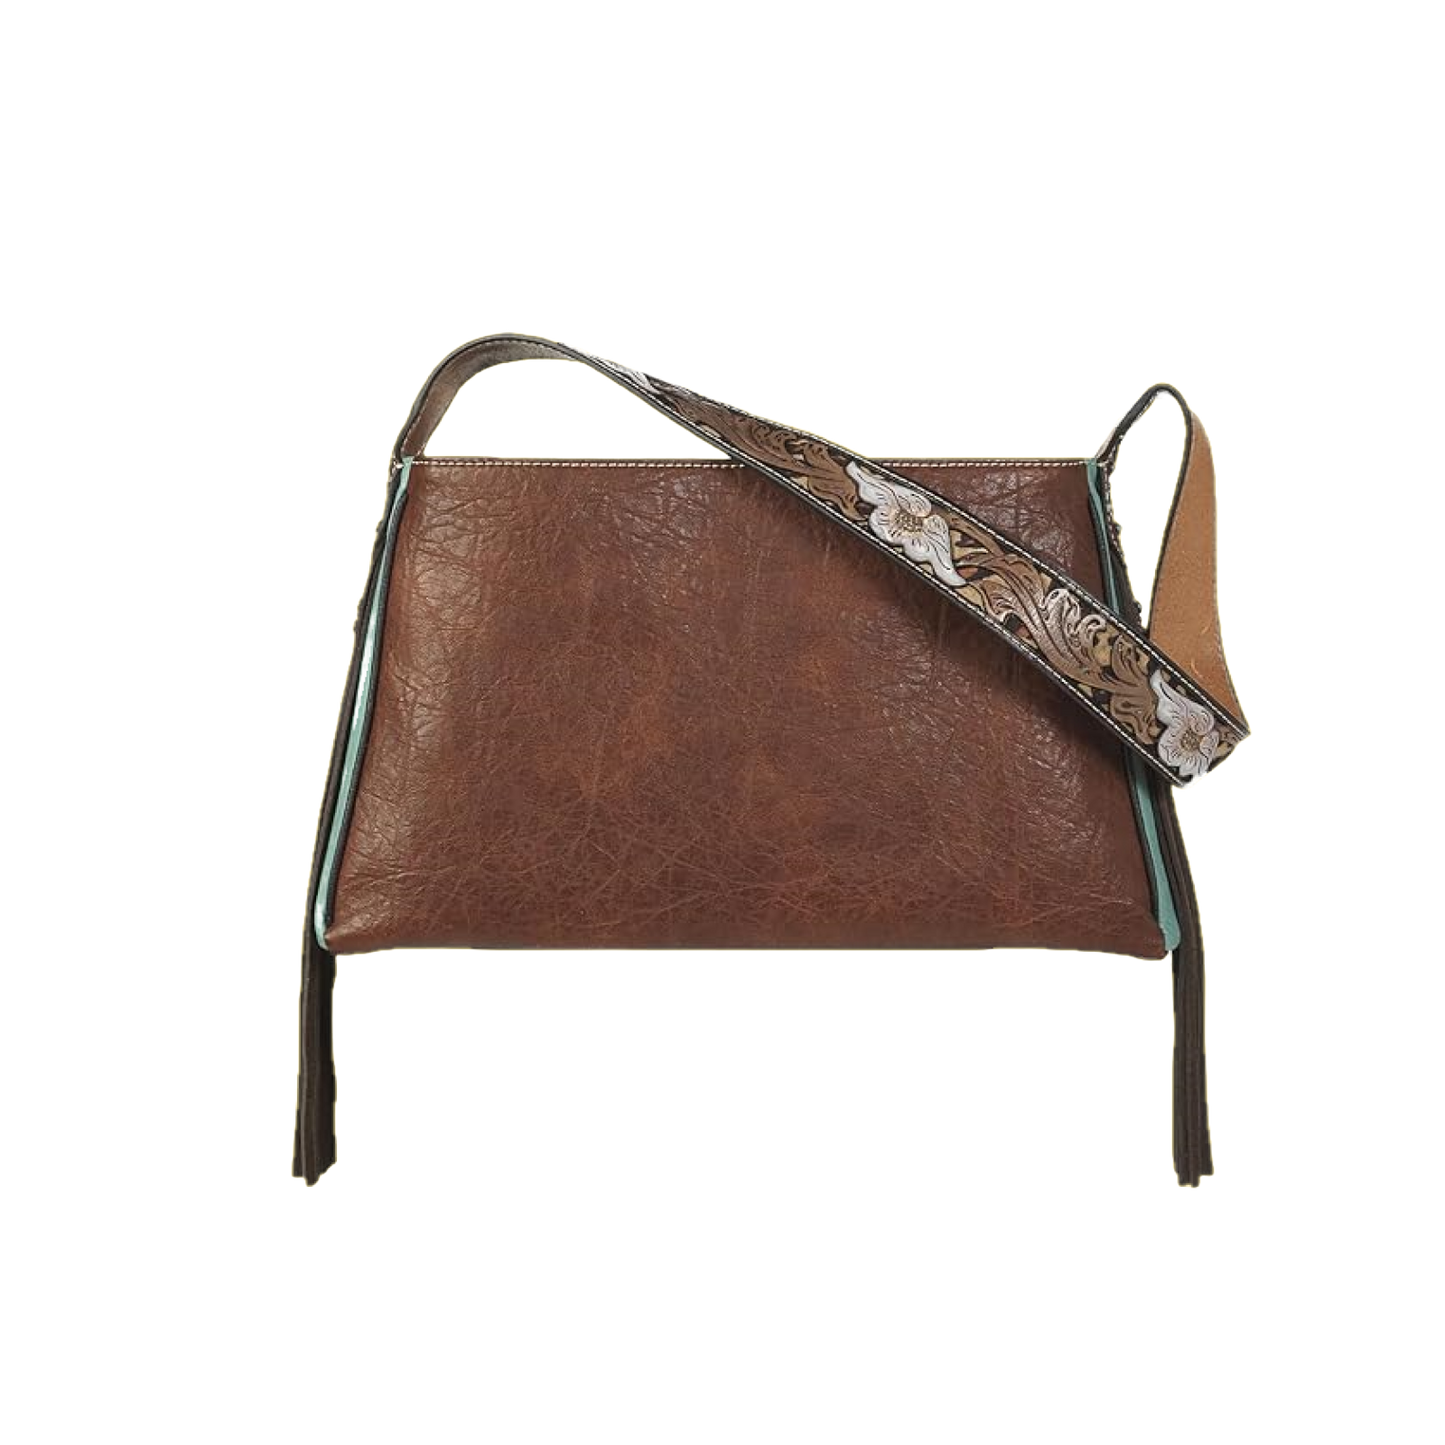 Nocona Ladies Jean Concealed Carry Brown Leather Satchel Bag N770008302